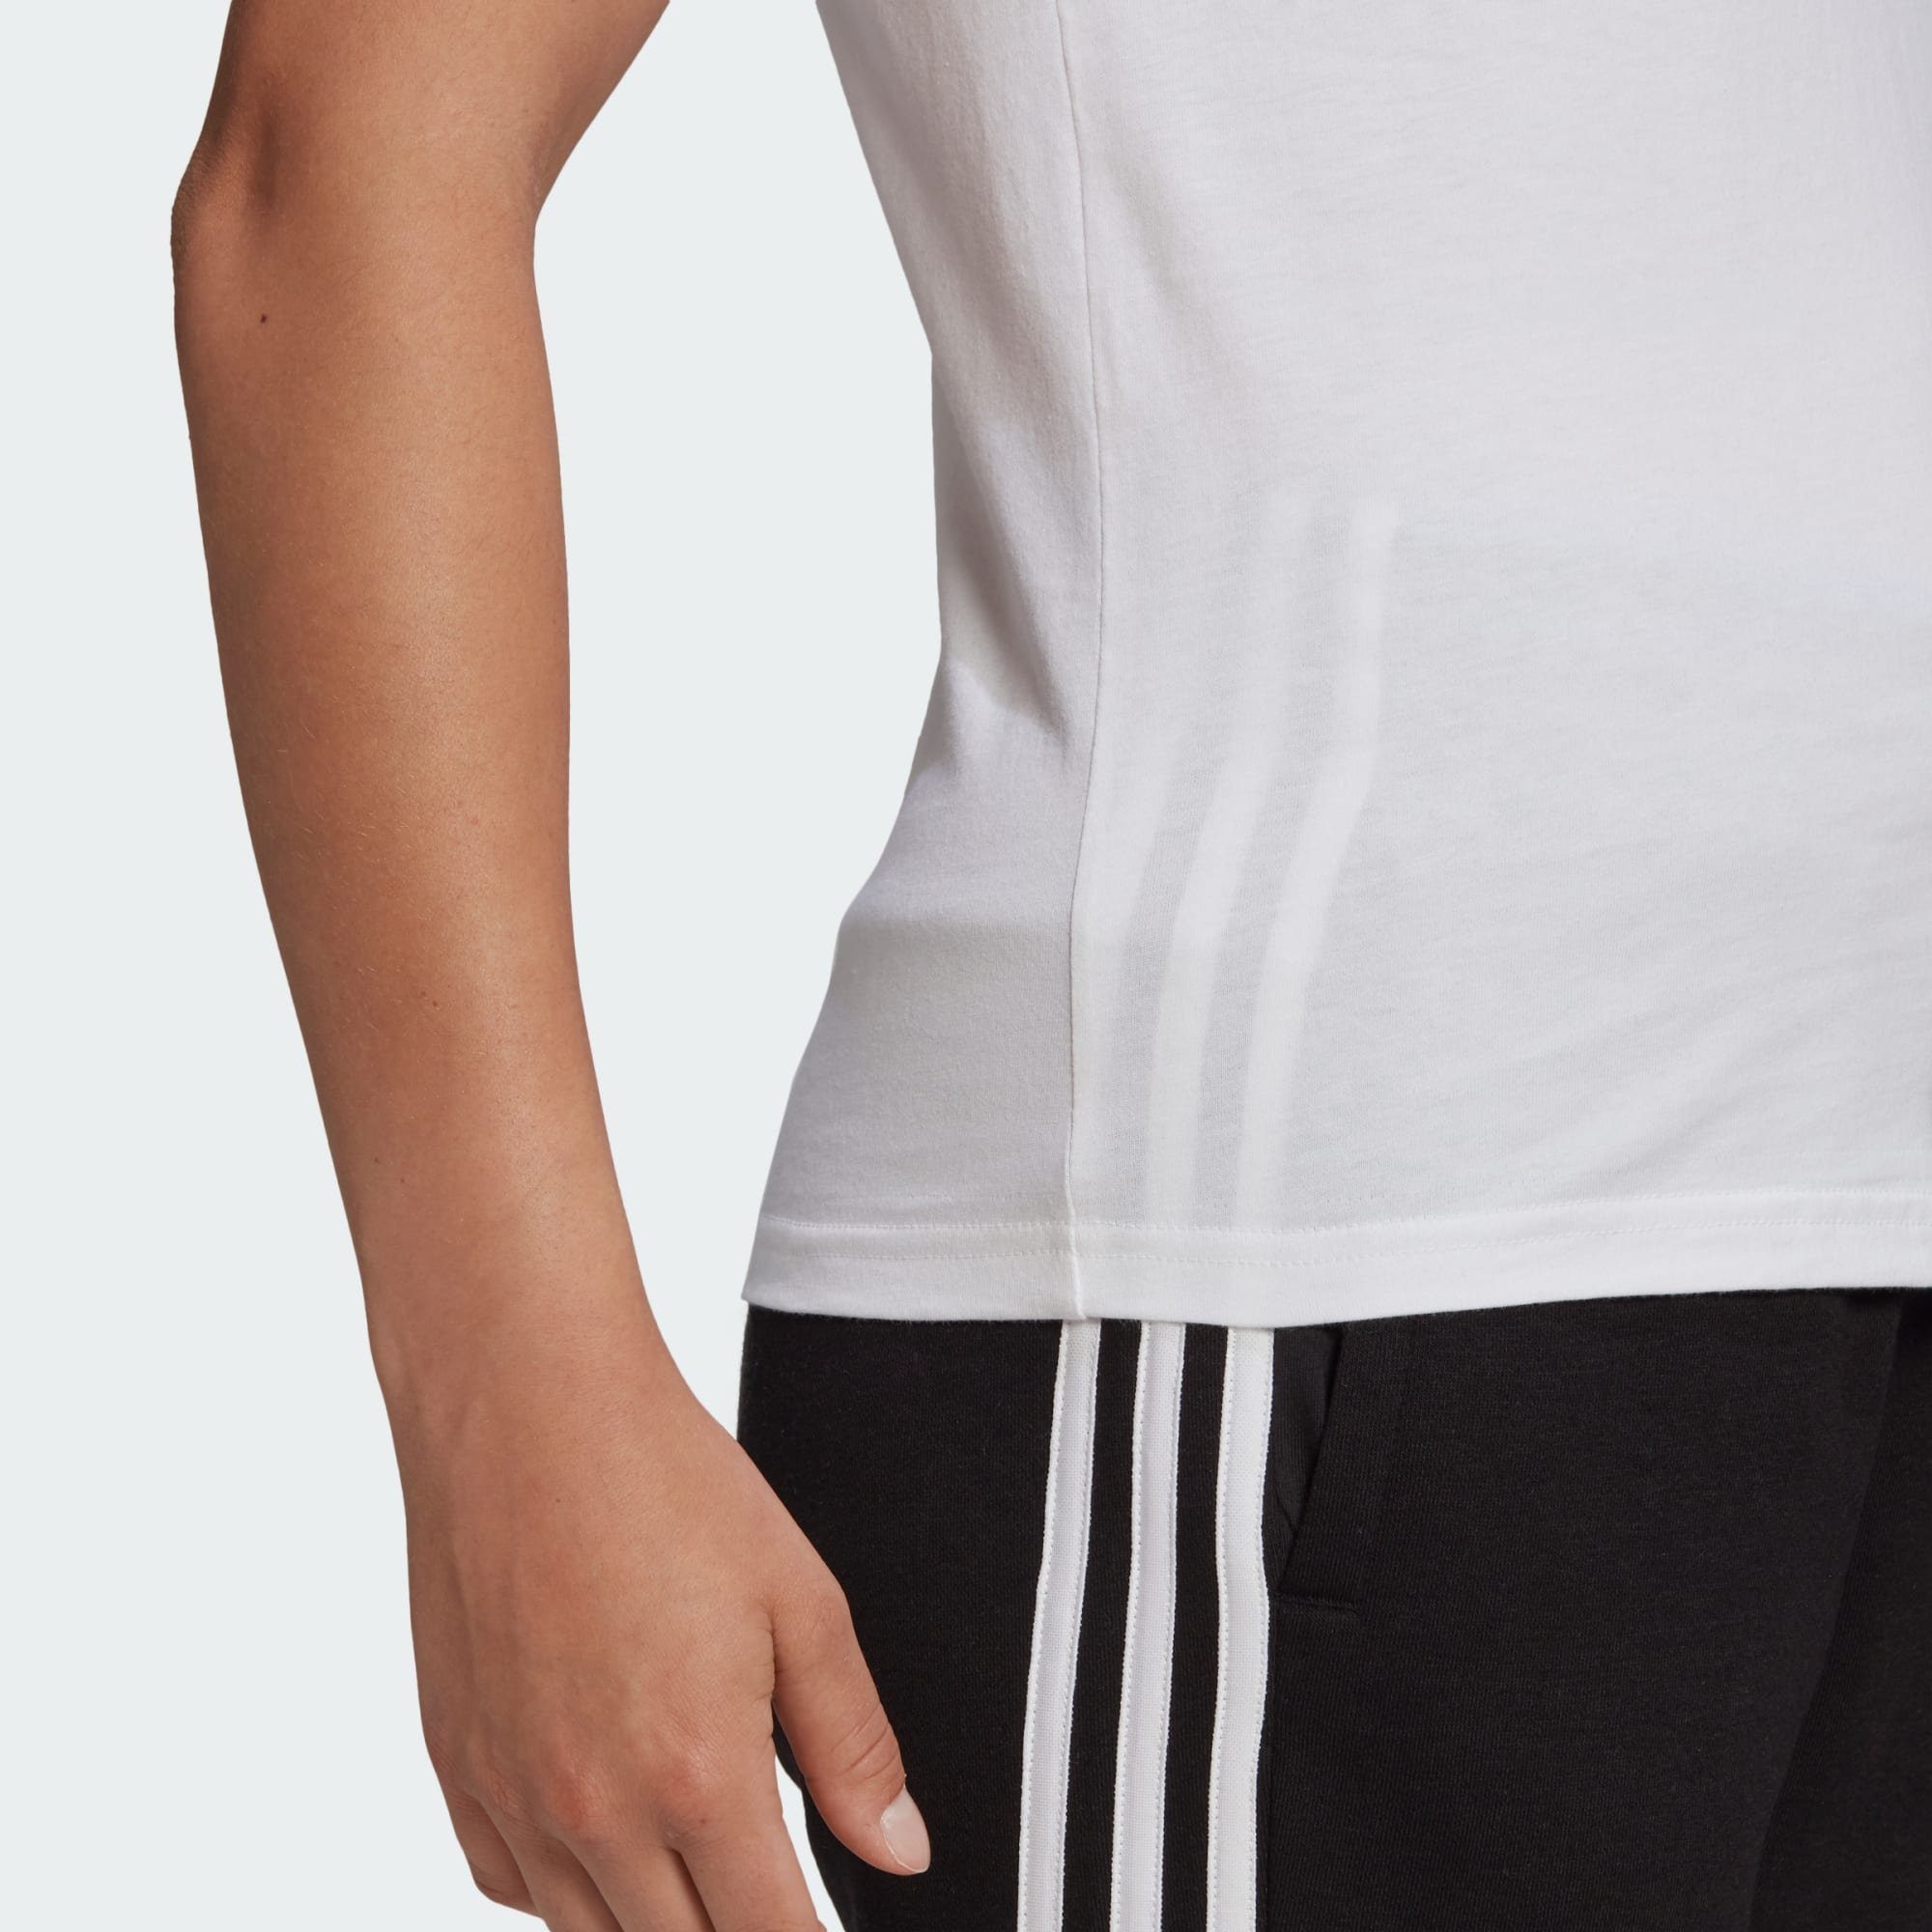 3-STREIFEN Sportswear adidas T-Shirt White / Black T-SHIRT LOUNGEWEAR SLIM ESSENTIALS